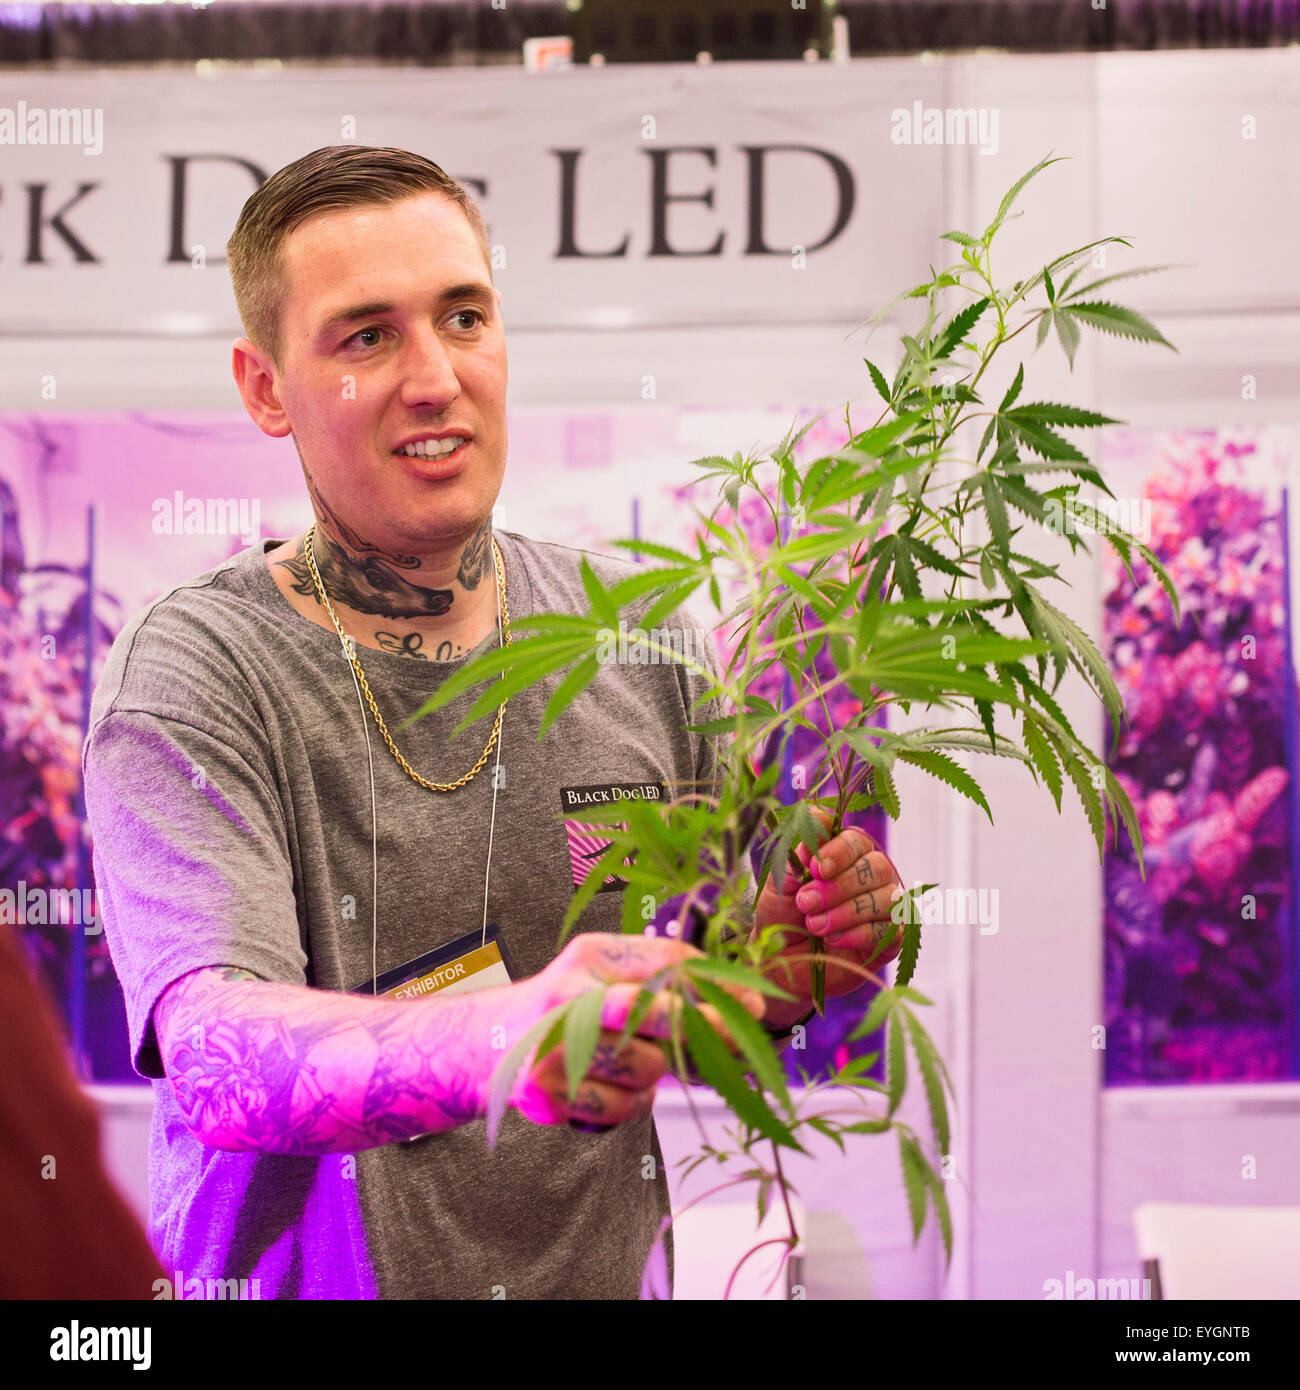 Denver, Colorado - A seller of grow lights at INDO Expo, a marijuana trade show. Stock Photo